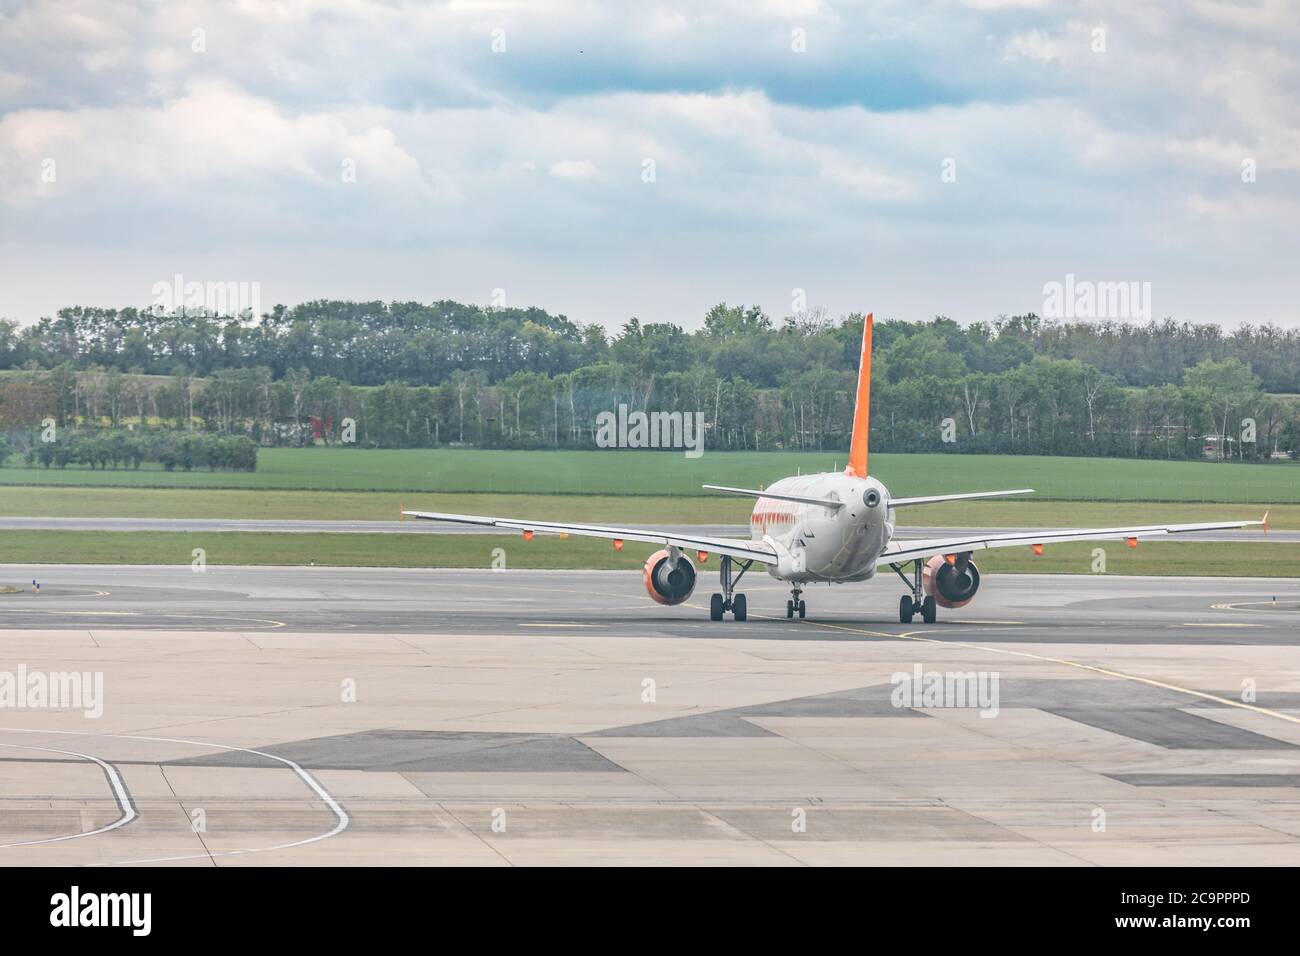 Vienne, Autriche - 07 mai 2019 : easyJet Europe Airbus A319. EasyJet Europe Airline GmbH, appelée easyJet, est une compagnie aérienne à bas prix basée à Vienne Banque D'Images